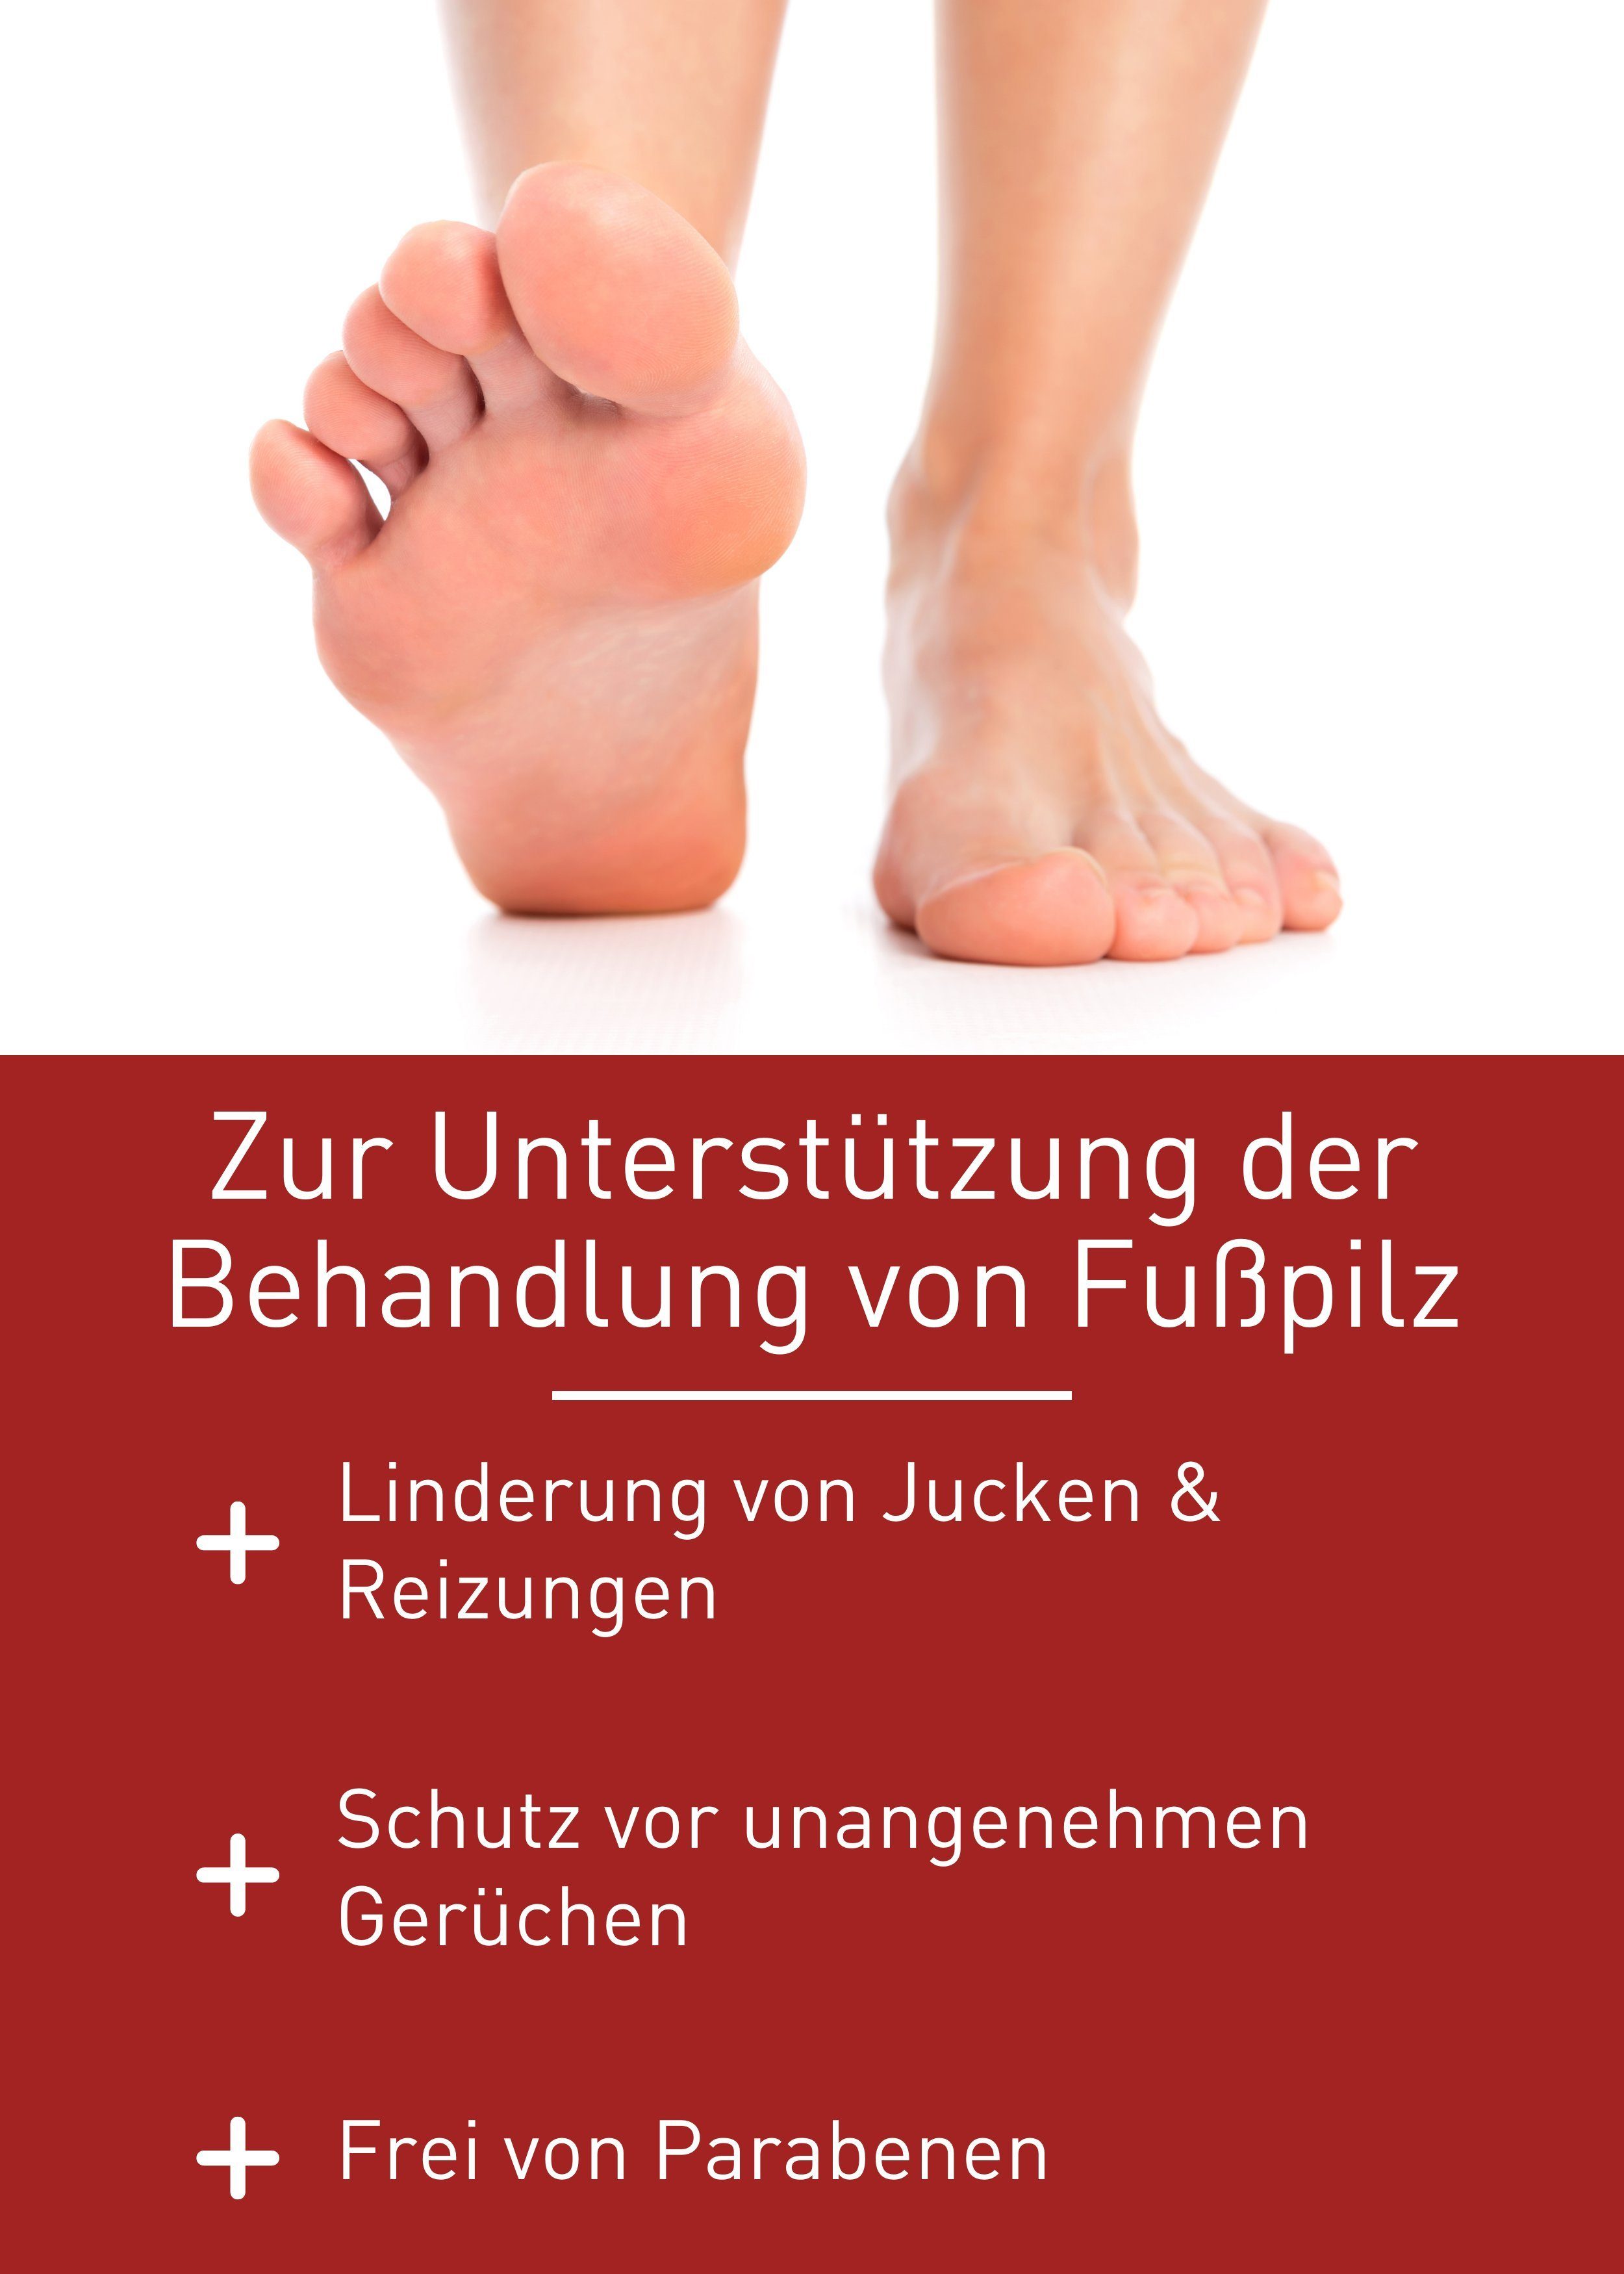 von zur Healthcare Behandlung Gel Fußpilz, patentierte Rezeptur Fußpilz N1 Medizinprodukt, Fußpflegecreme